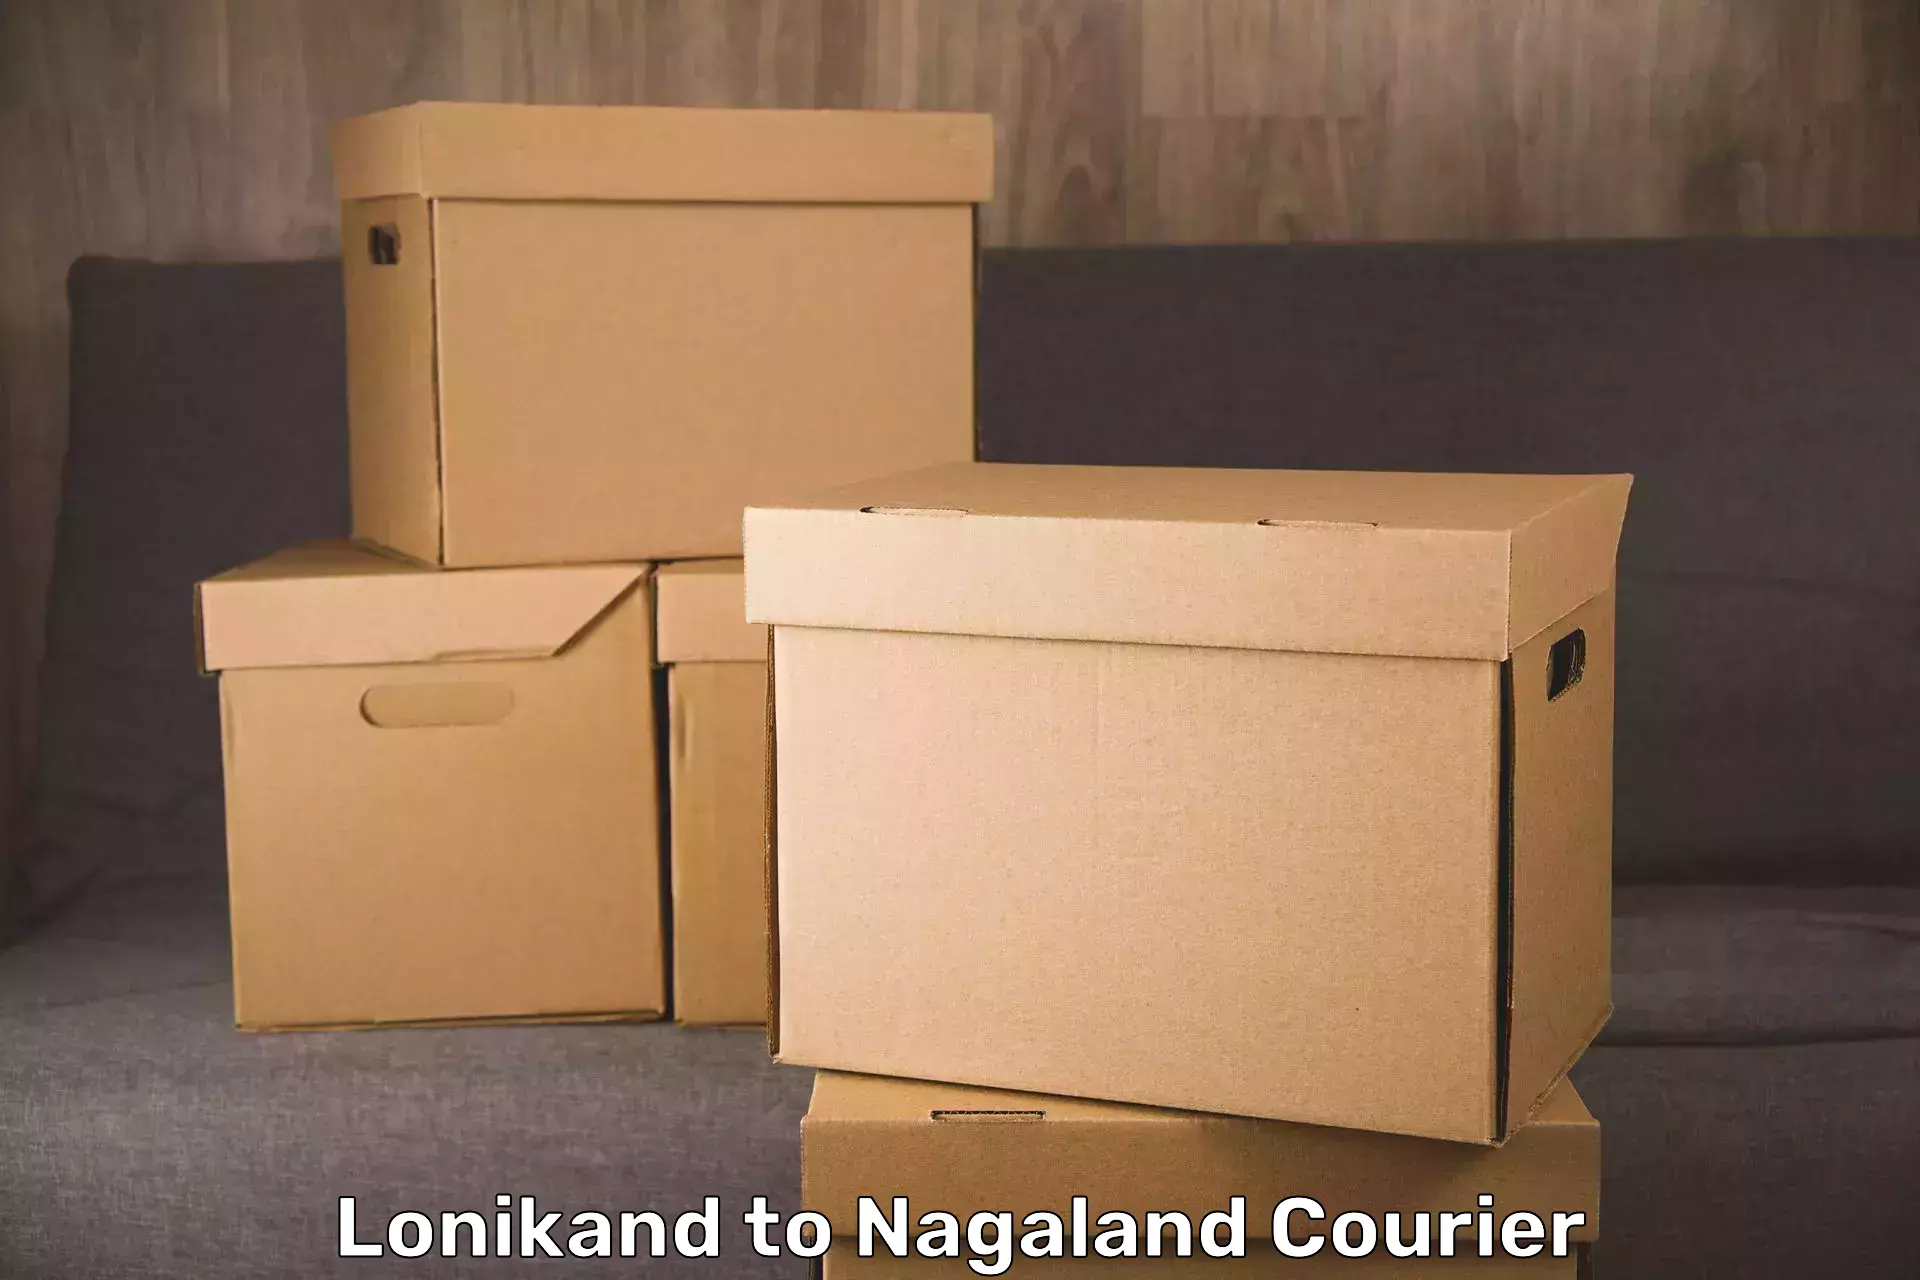 Luggage forwarding service Lonikand to Nagaland